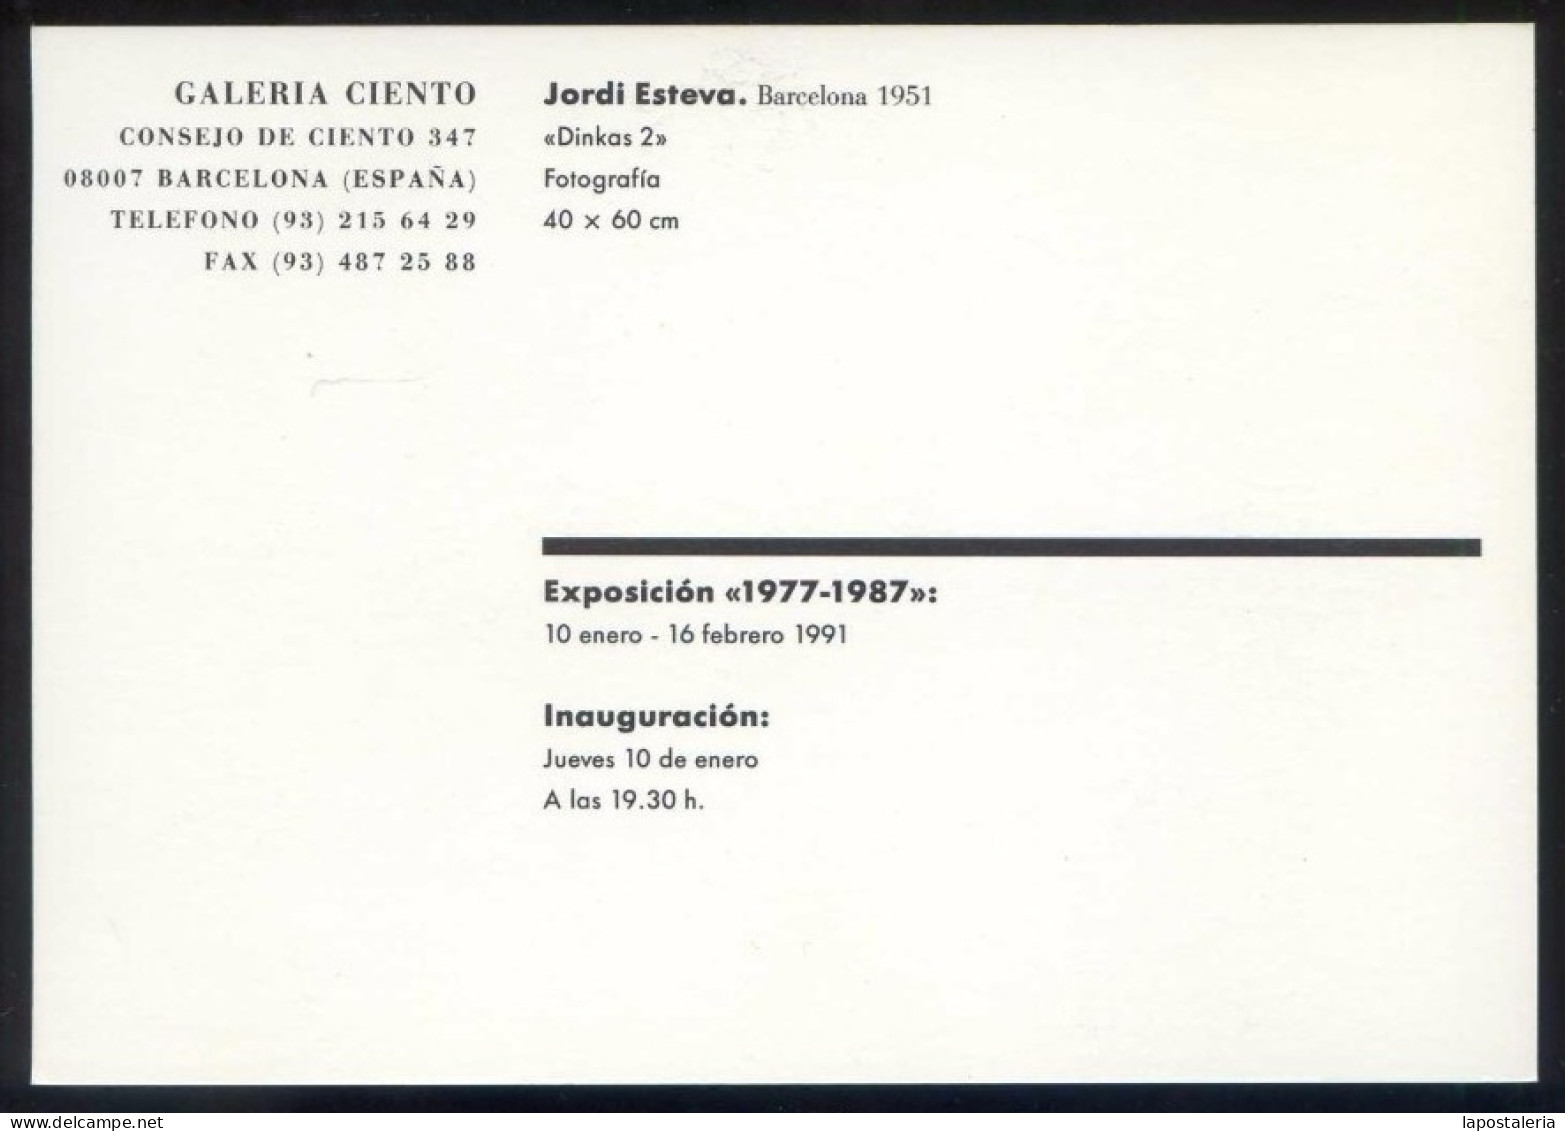 Expo Foto *Jordi Esteva 1977-1987* Galería Ciento, Barcelona 1991. Nueva. - Exposiciones